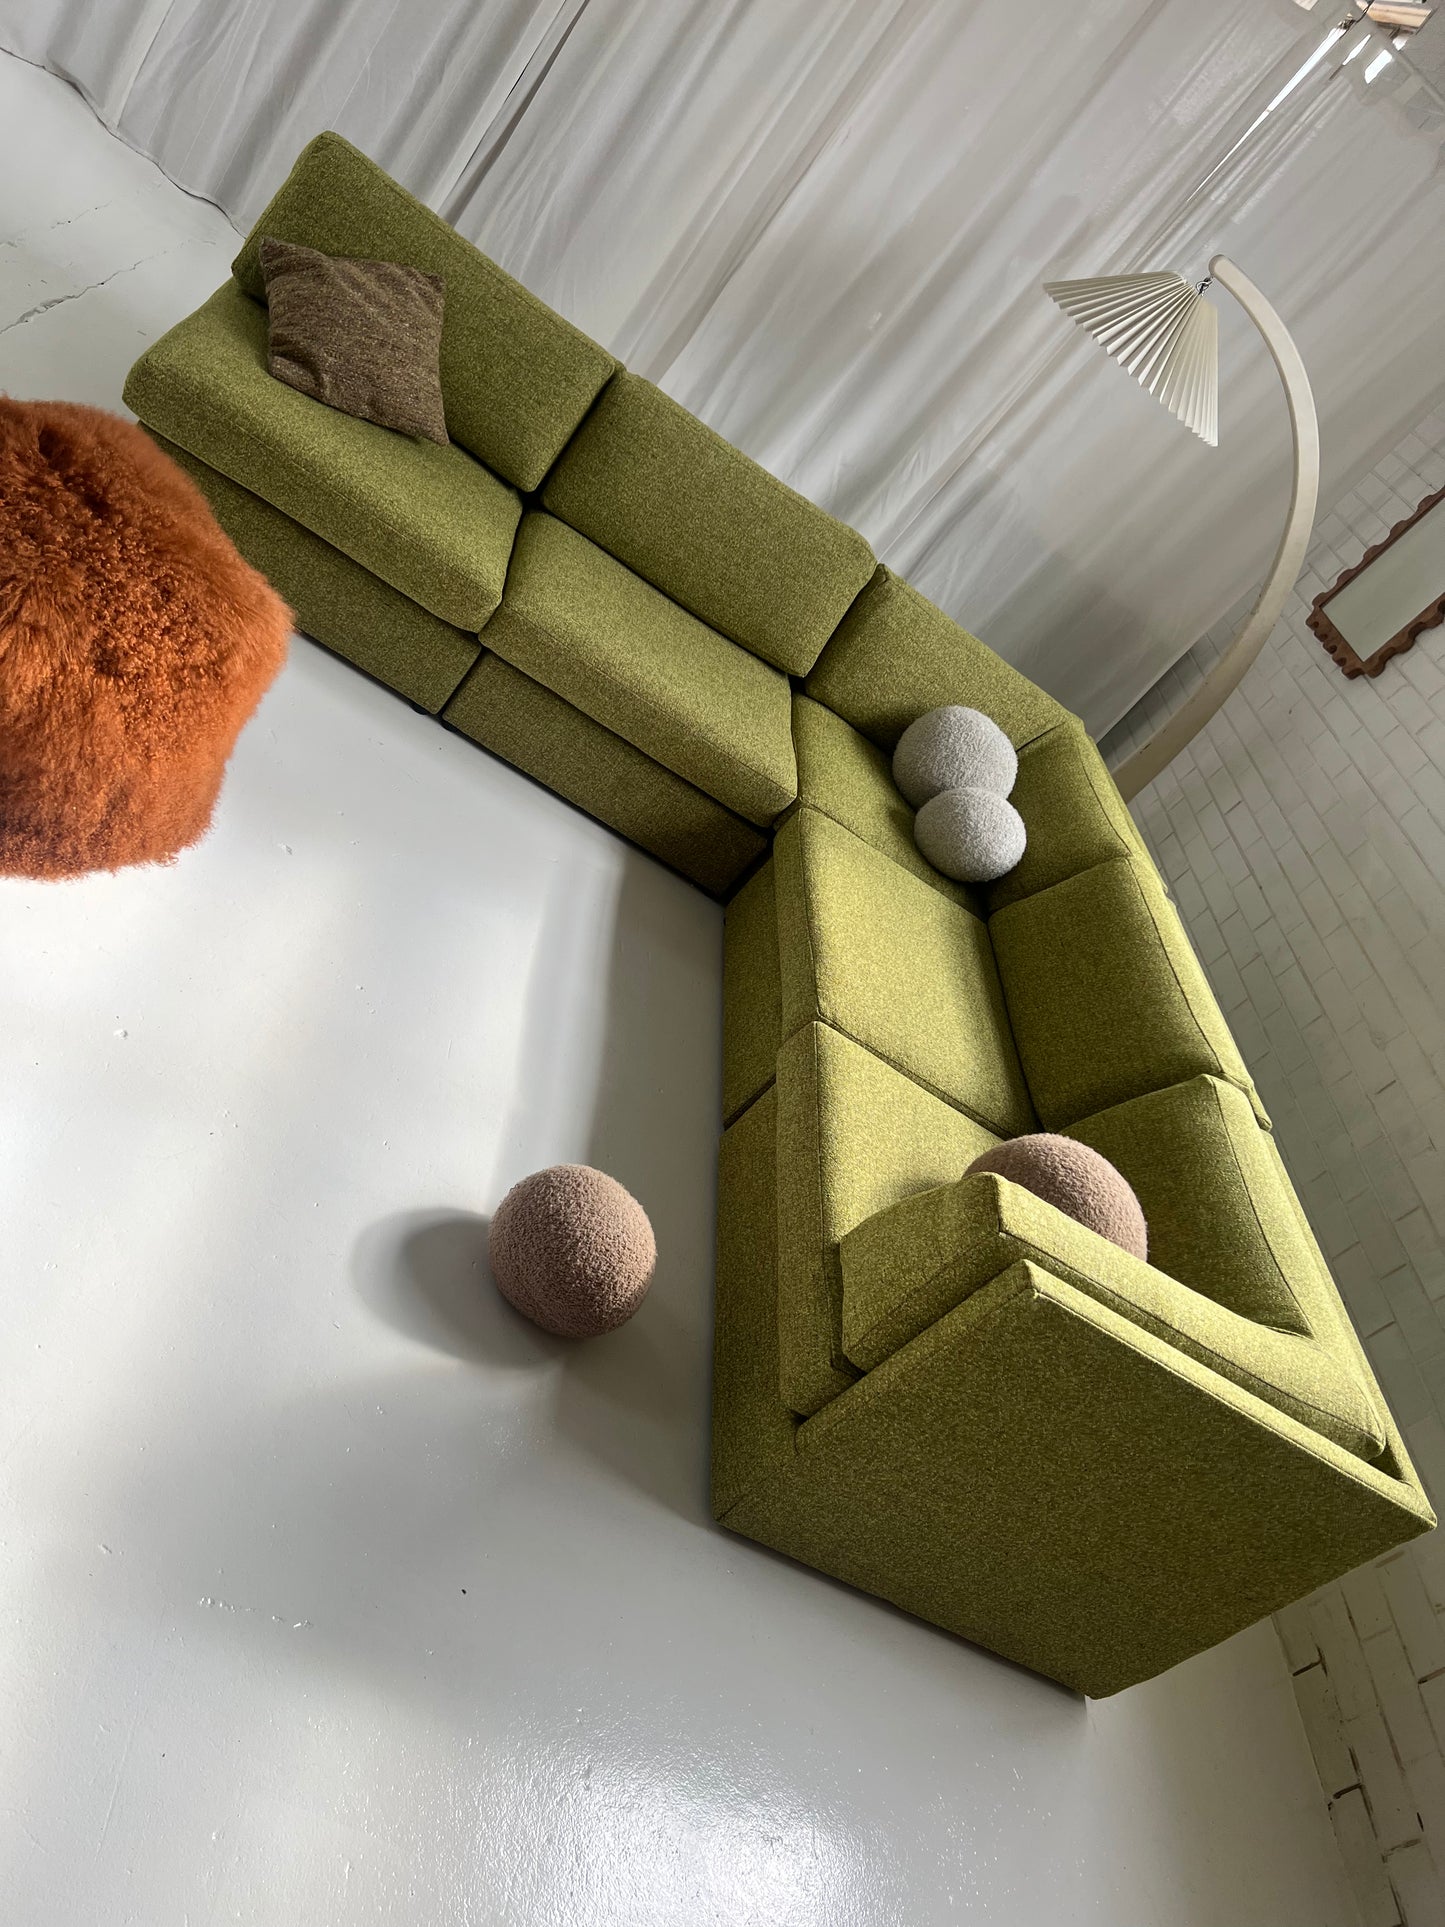 Green Boucle Modular Sofa Set